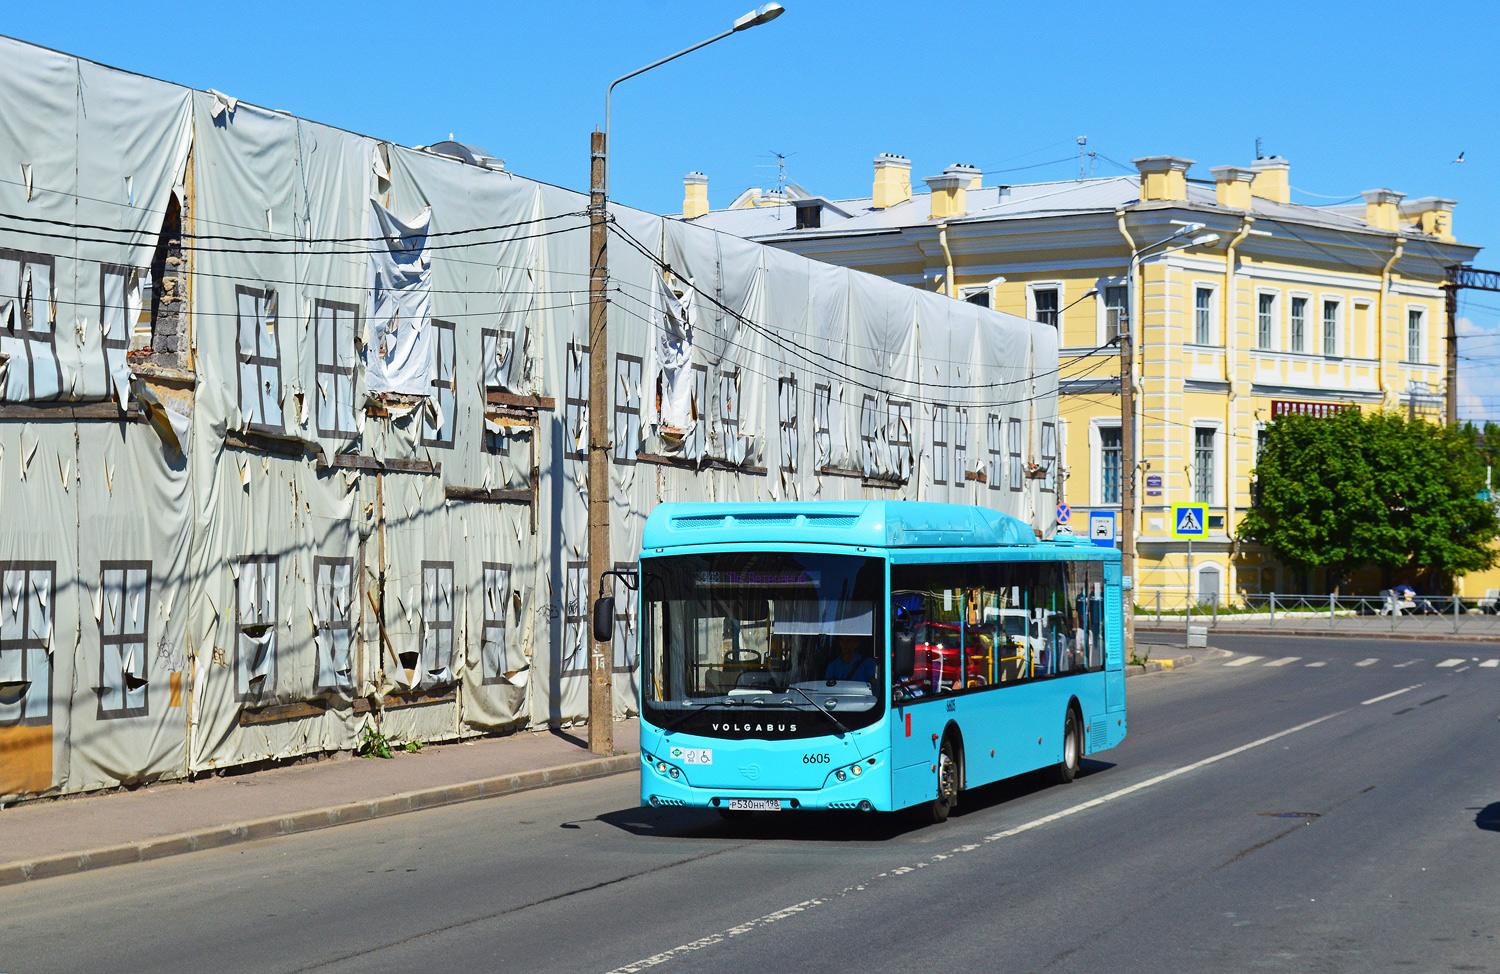 Sankt Petersburg, Volgabus-5270.G4 (CNG) Nr. 6605